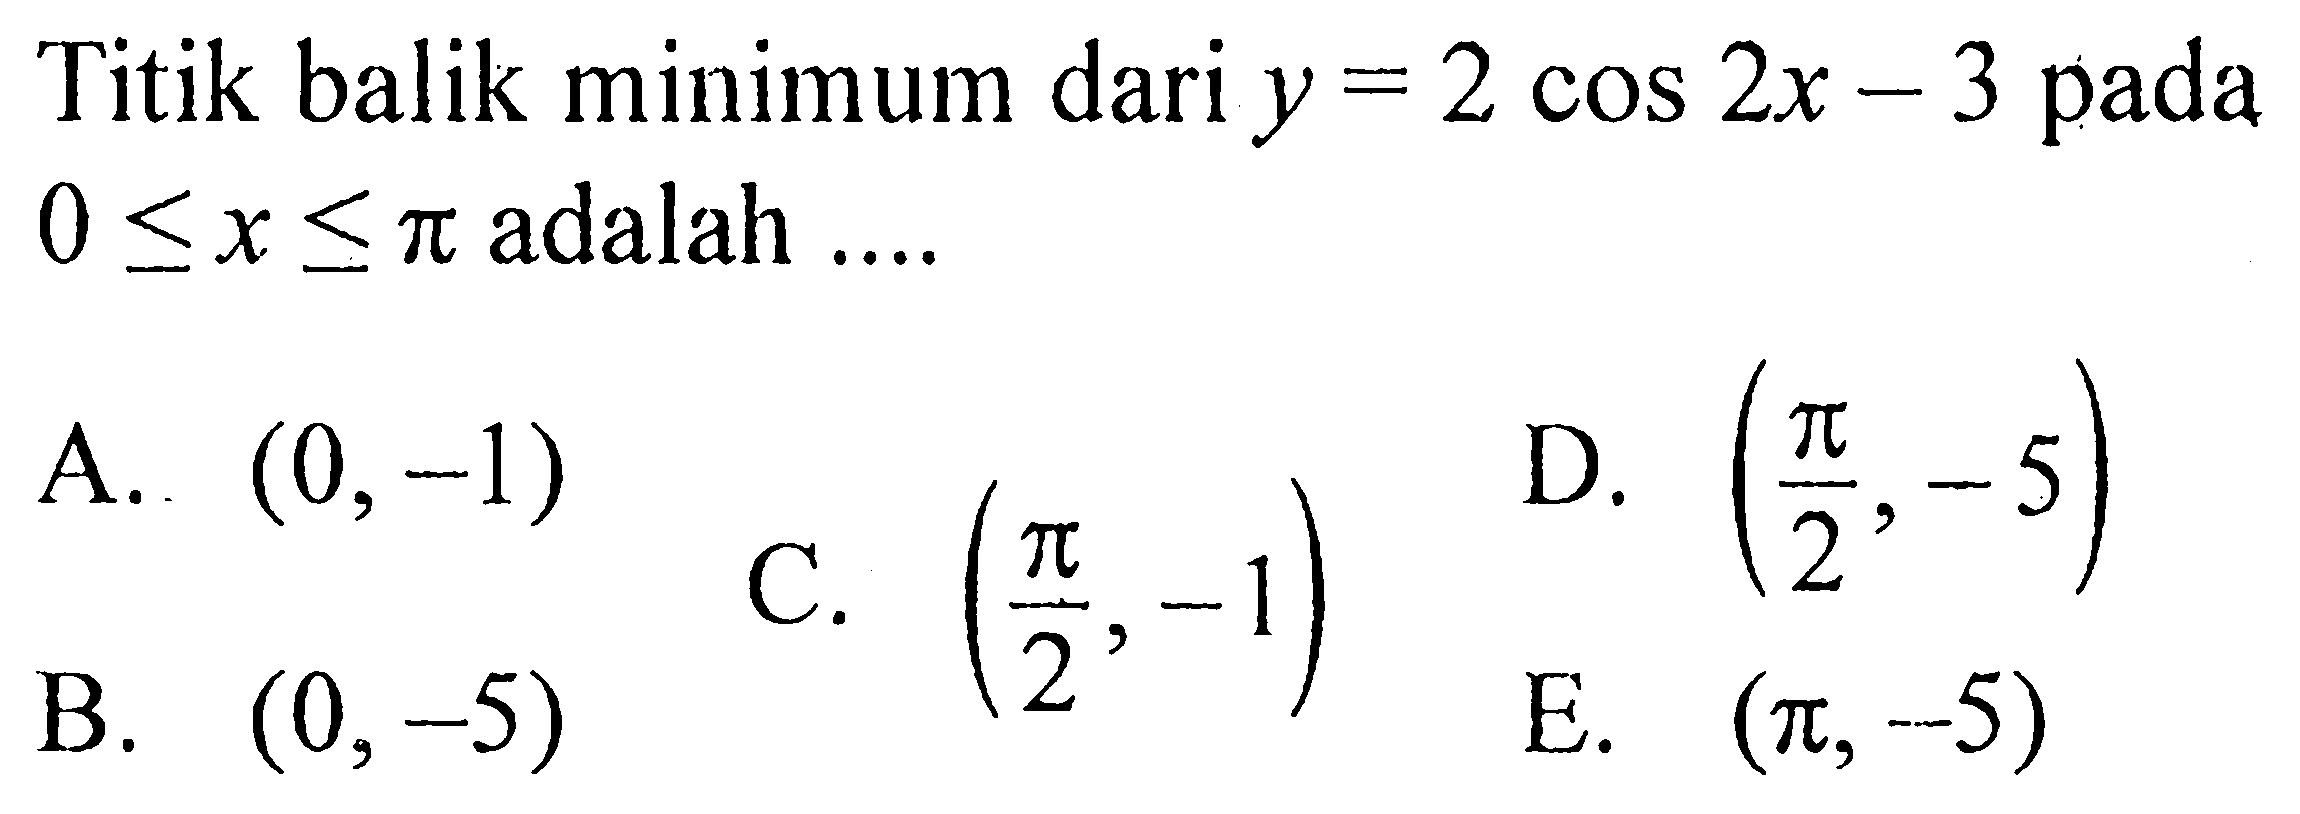 Titik balik minimum dari  y=2cos 2x-3  pada  0 <= x <= pi  adalah ....